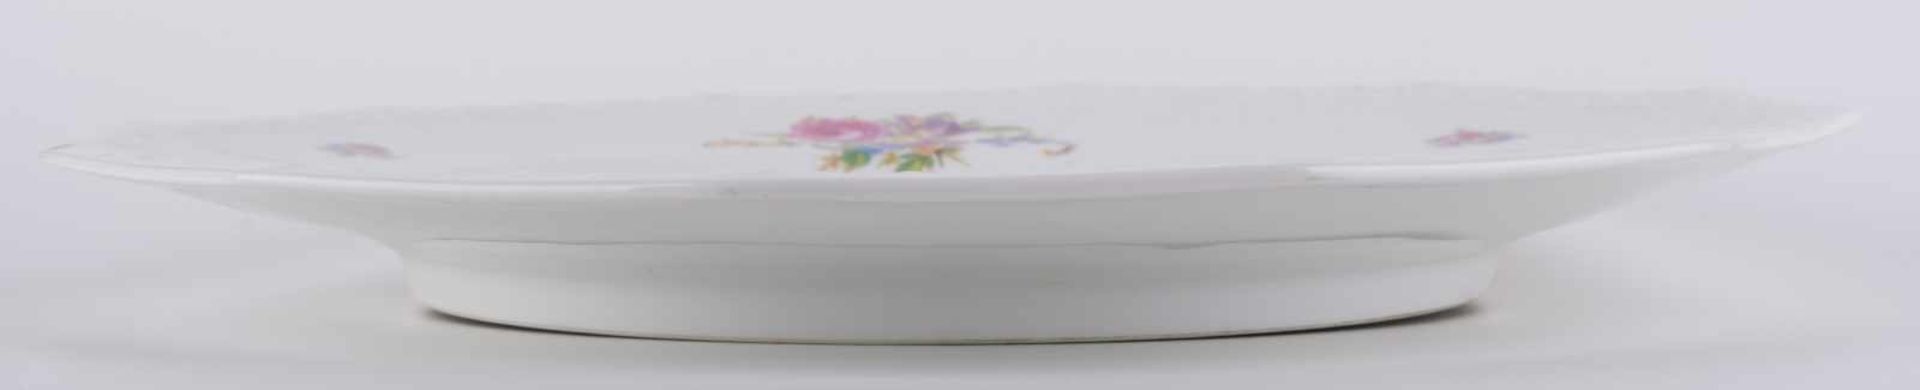 Kuchenplatte Rosenthal Maria / Cake plate verziert mit Blumendekor, umlaufend floraler - Bild 6 aus 8